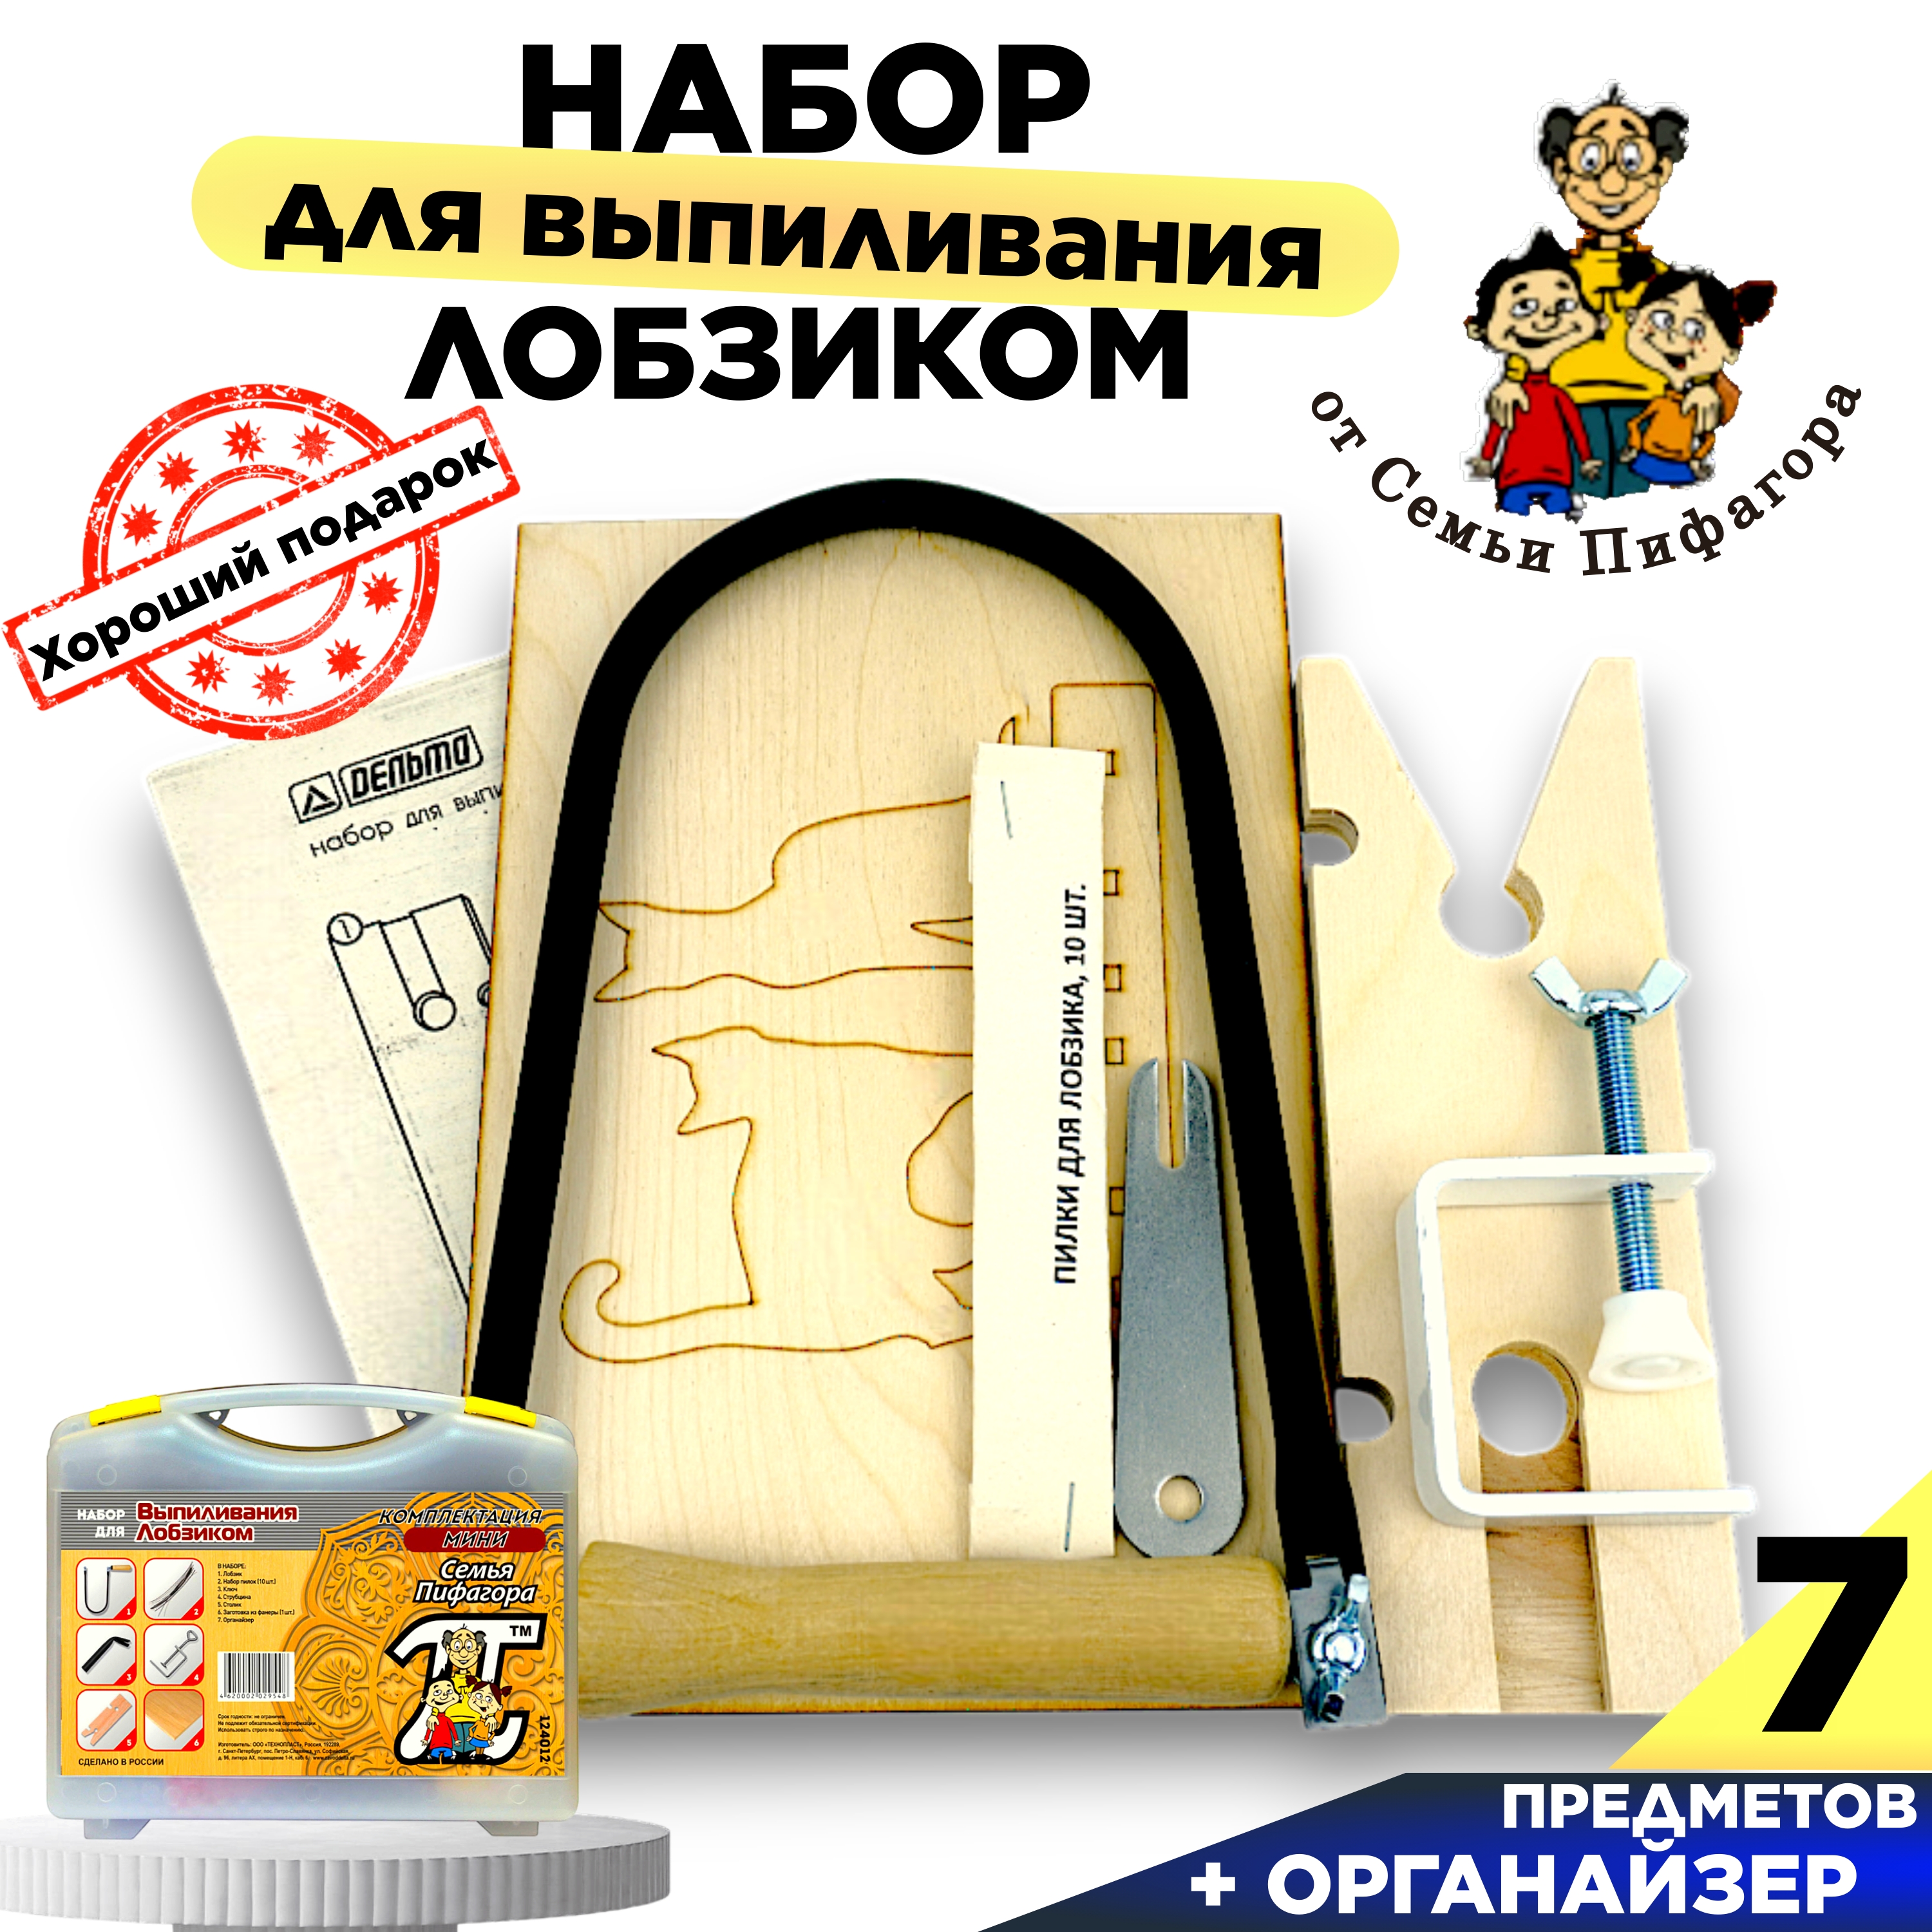 Выпиливания лобзиком набор  КЕЙС в комплекте набор для выпиливания лобзиком от семьи пифагора с удобным кейсом